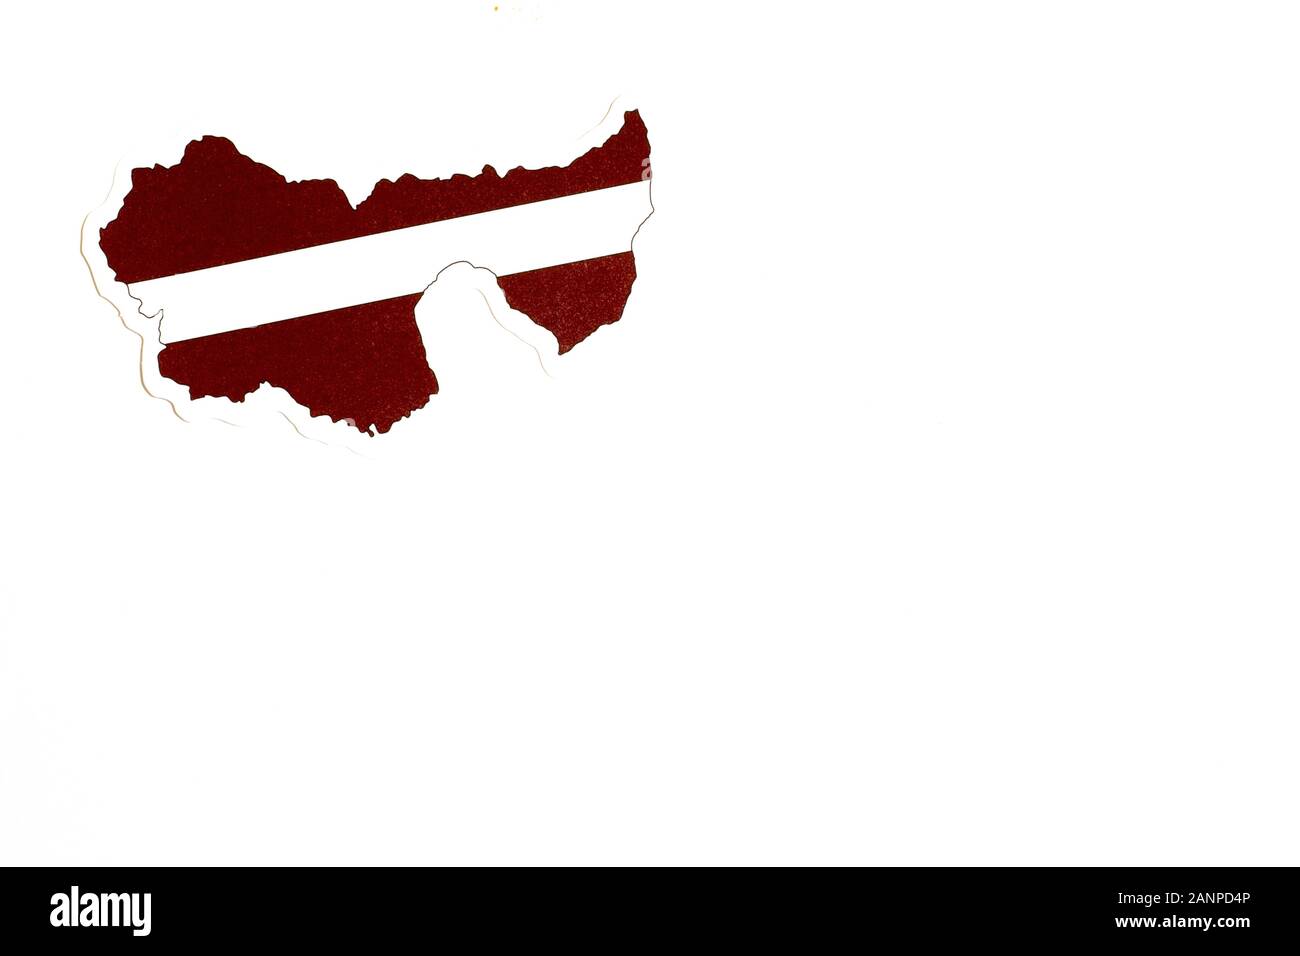 Los Angeles, California, Stati Uniti d'America - 17 gennaio 2020: Bandiera nazionale della Lettonia. Contorno del paese su sfondo bianco con spazio di copia. Illustrazione politica Foto Stock